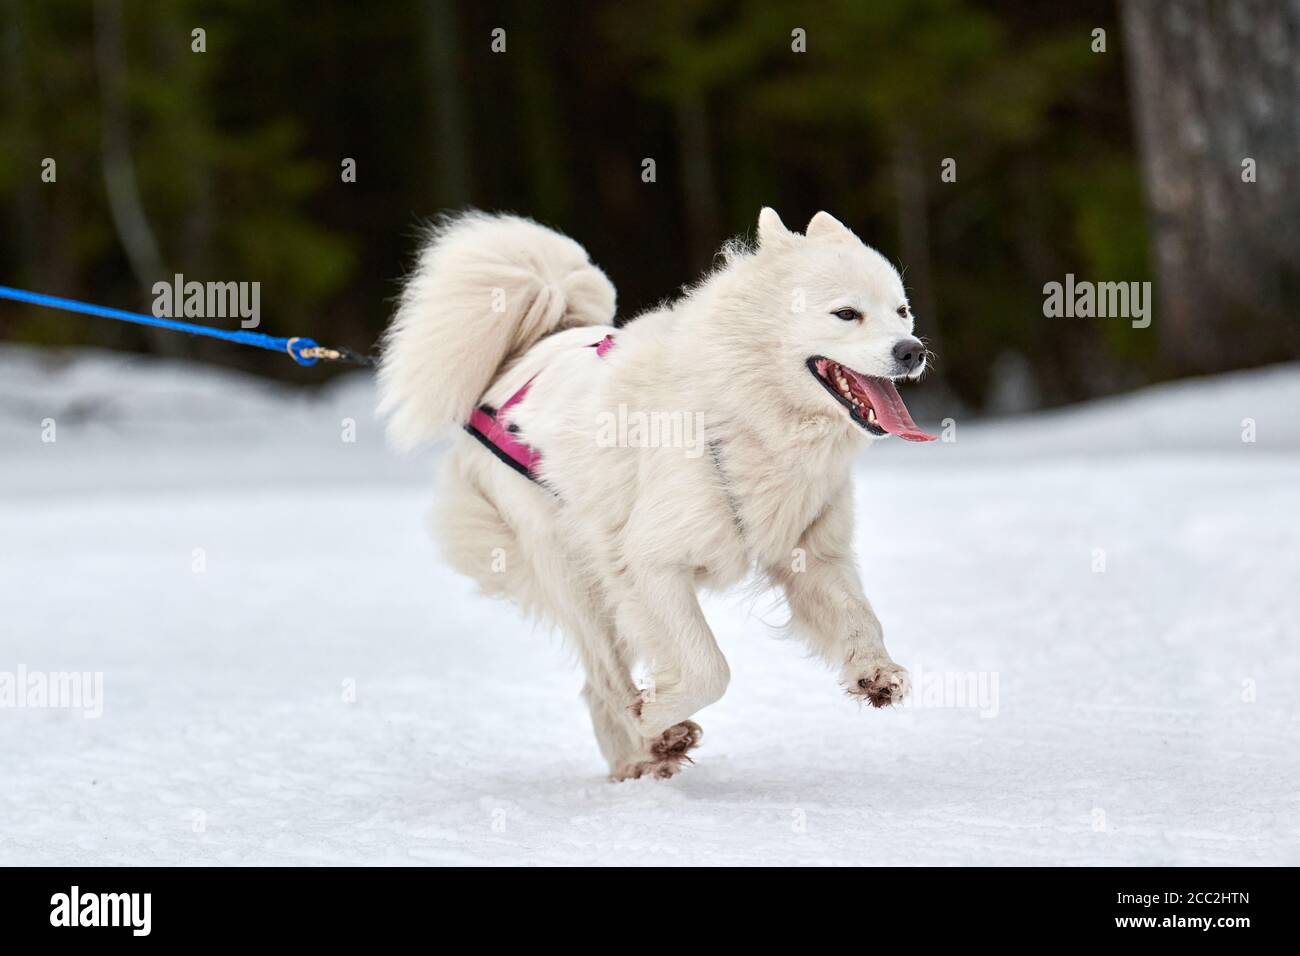 Course de chien de Smoyed sur des courses de chiens de traîneau.  Compétition d'équipe de traîneau de sport de chien d'hiver. Chien de Samoyed  dans harnais tirer le skieur ou le traîneau